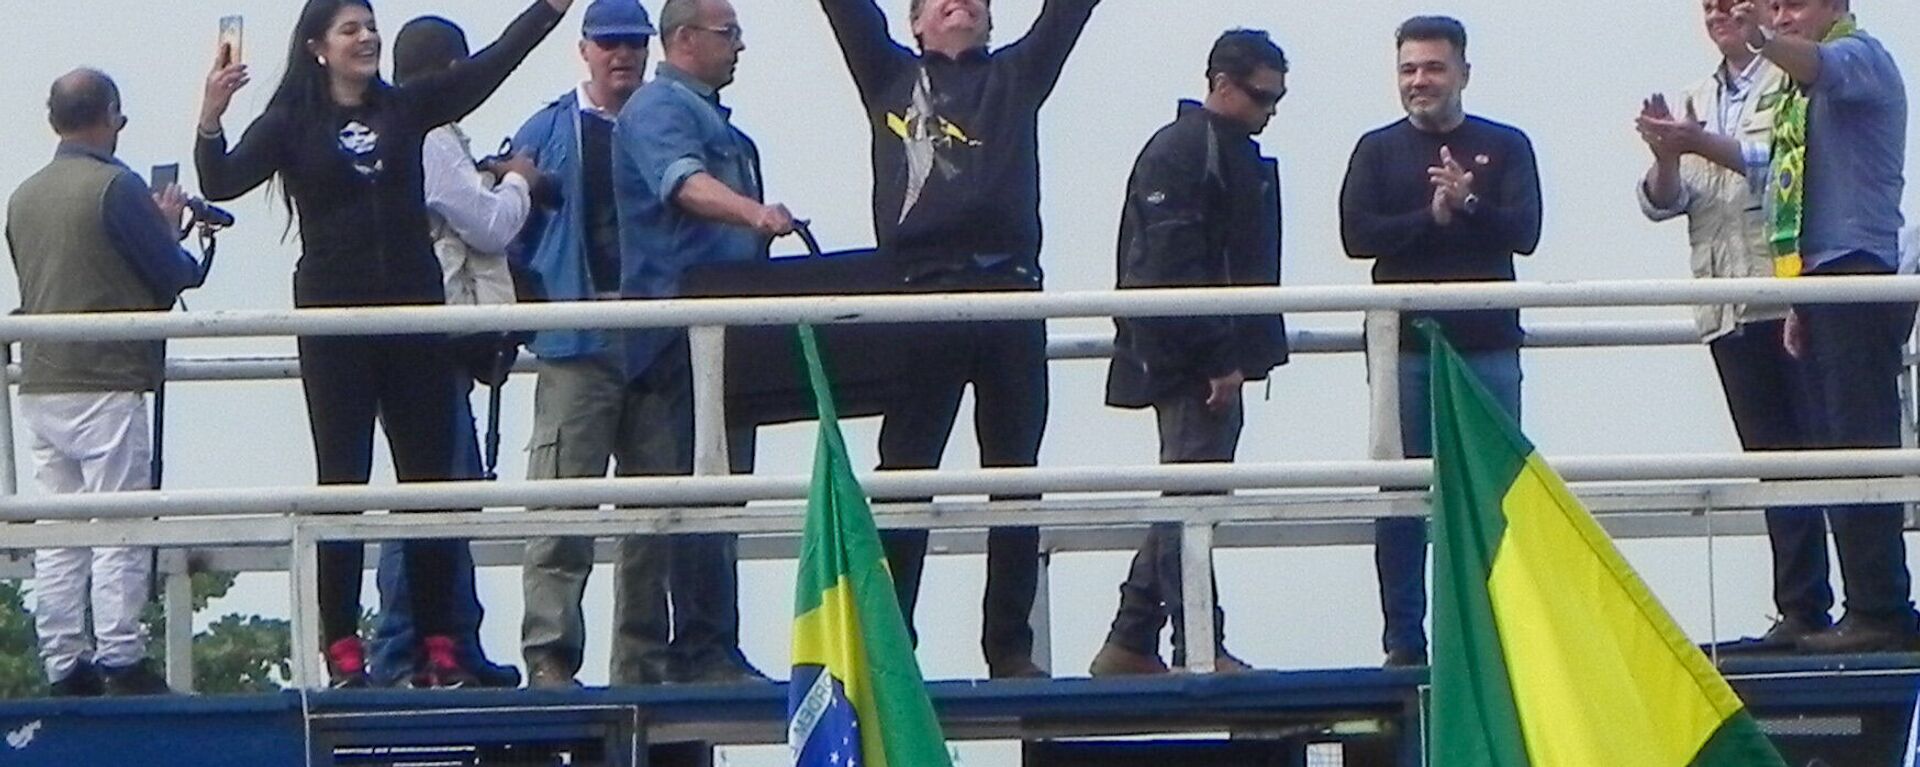 Presidente Jair Bolsonaro (sem partido) participa de ato organizado por apoiadores de seu governo no Rio de Janeiro - Sputnik Brasil, 1920, 23.05.2021